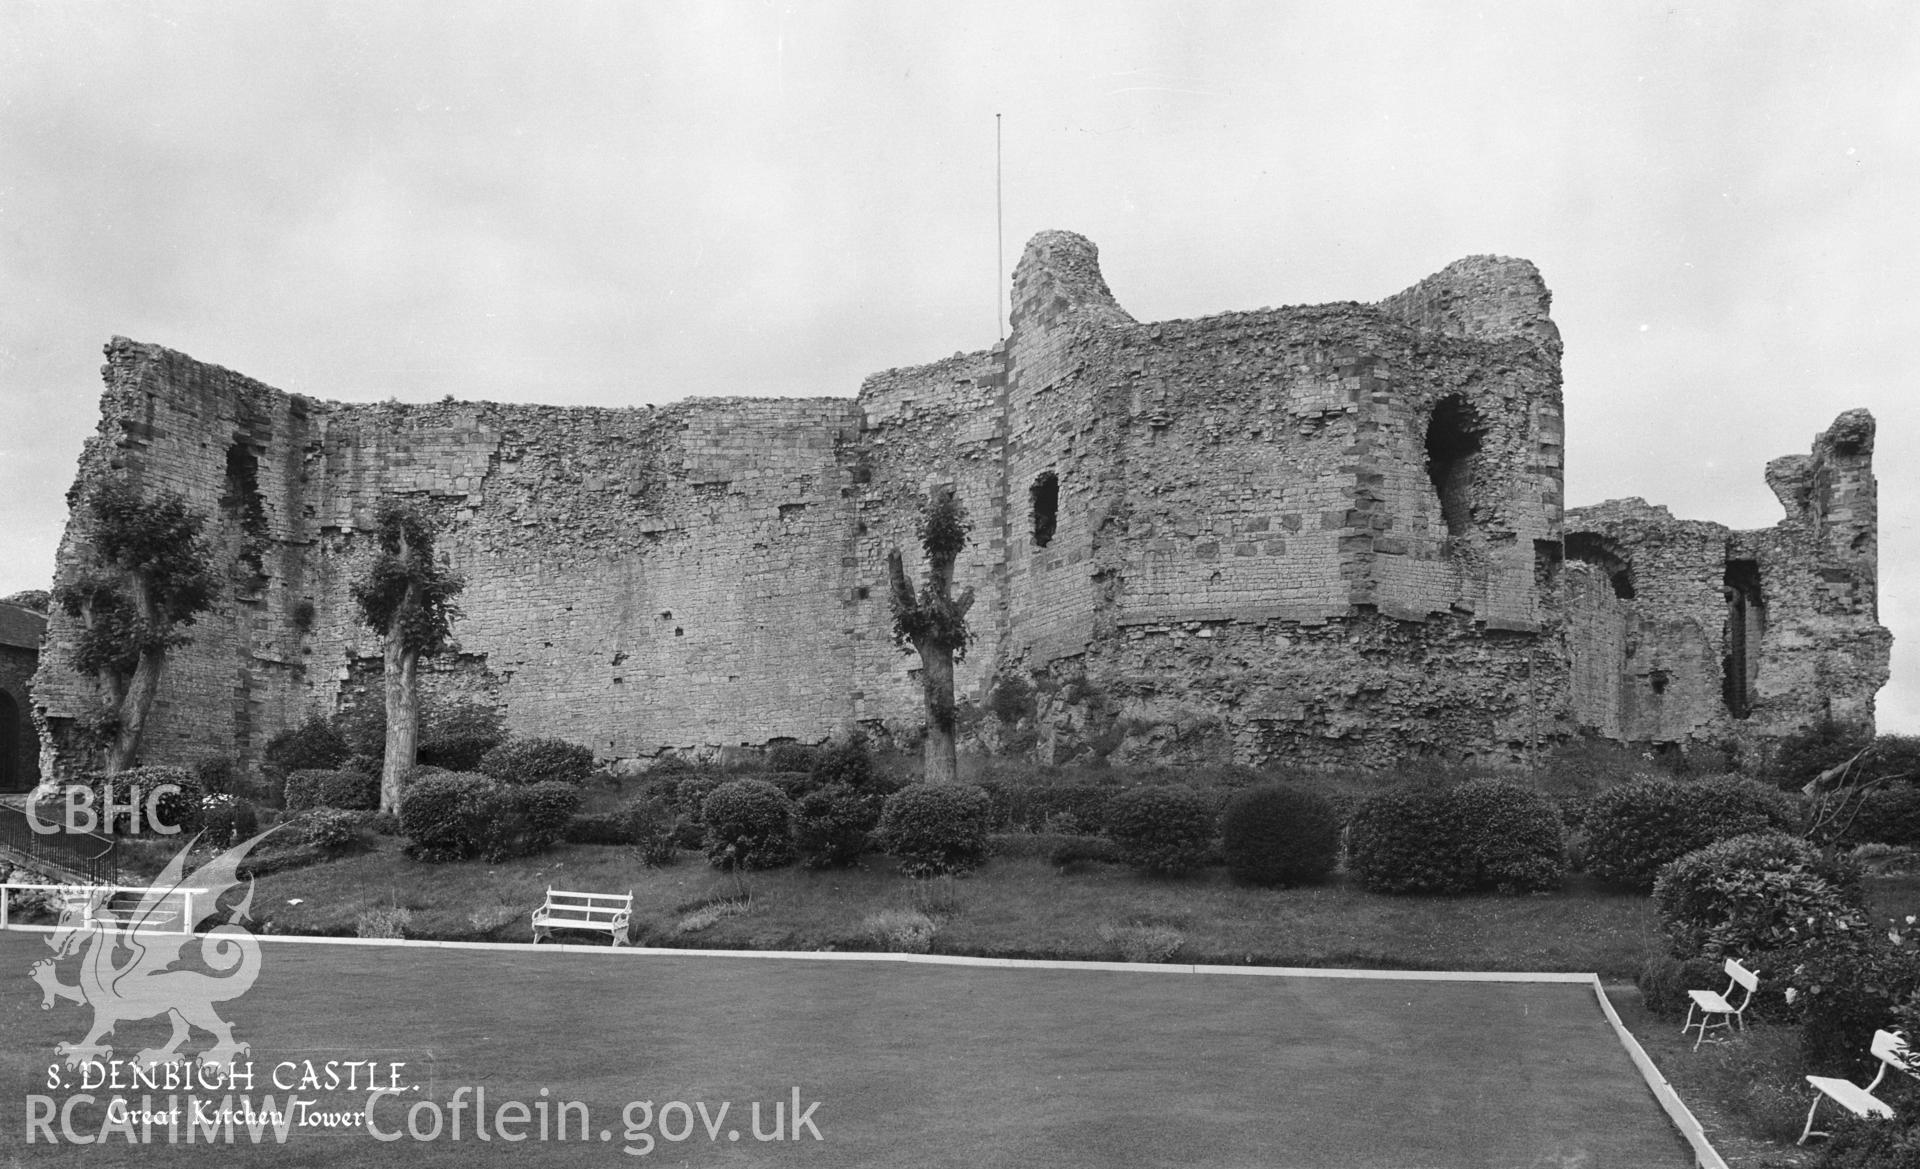 D.O.E photograph of Denbigh Castle.